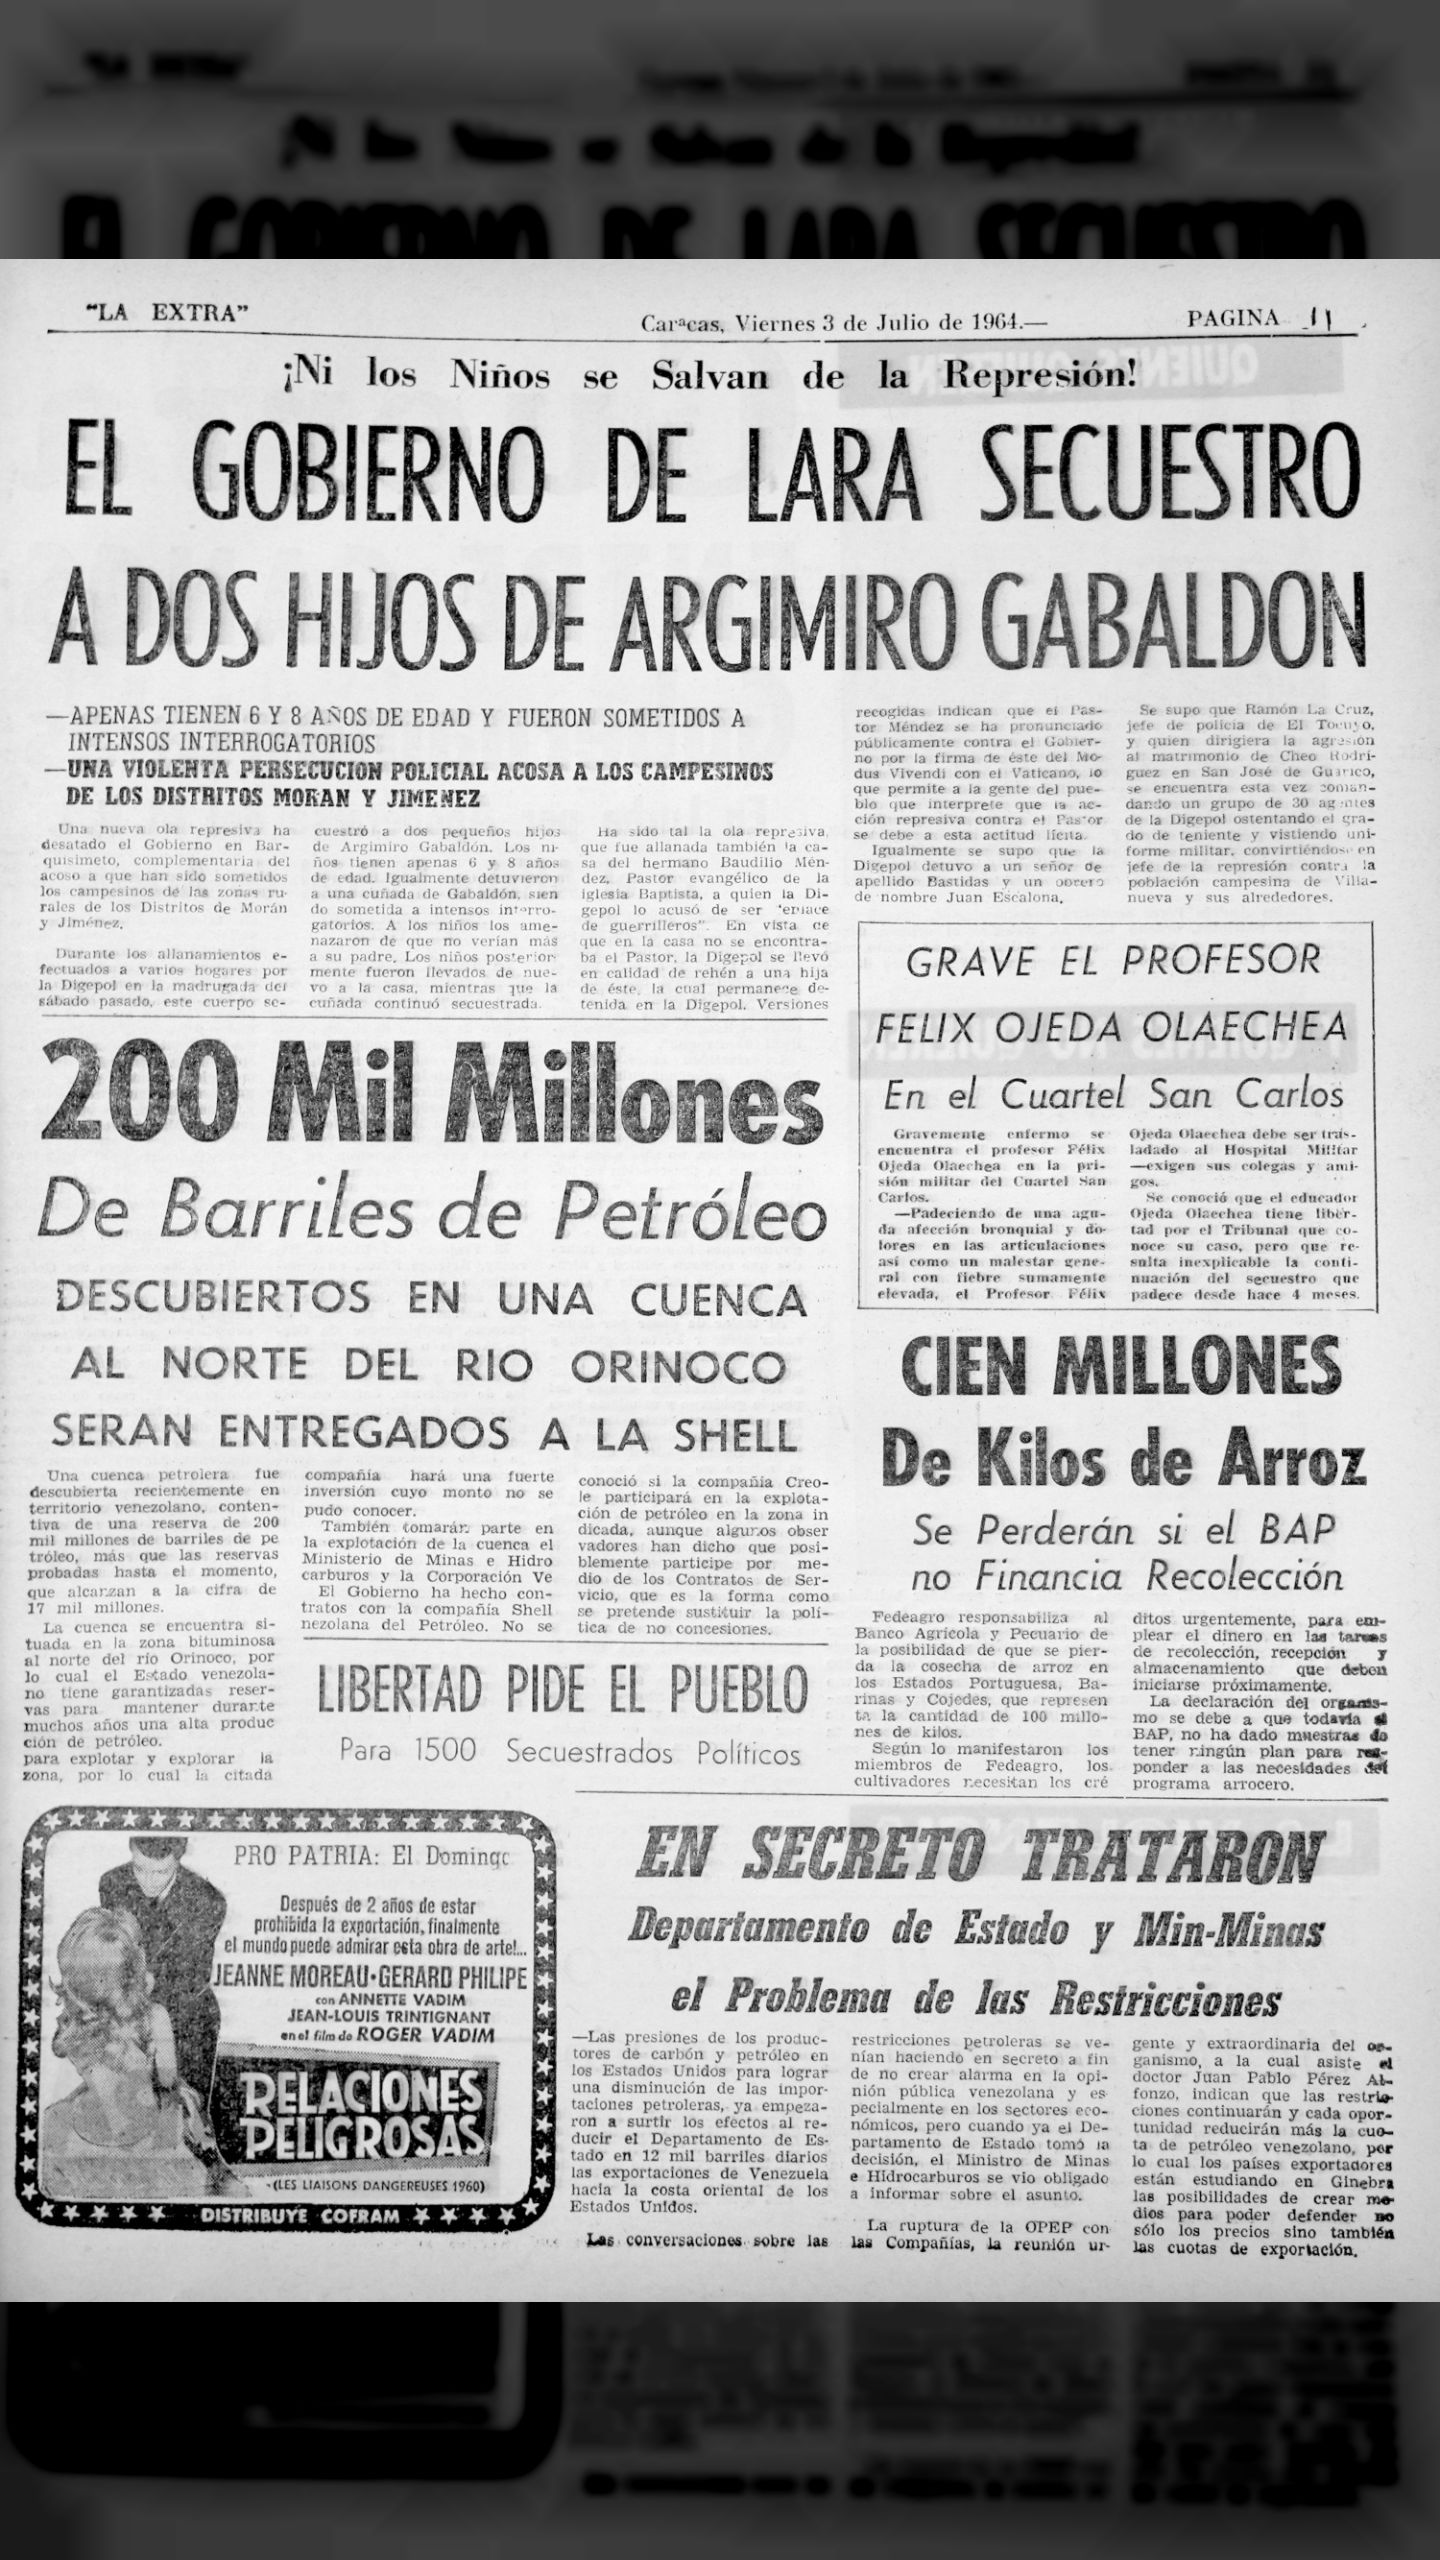 El gobierno de Lara secuestró dos hijos de Argimiro Gabaldón (La Extra, 03 de julio 1964)